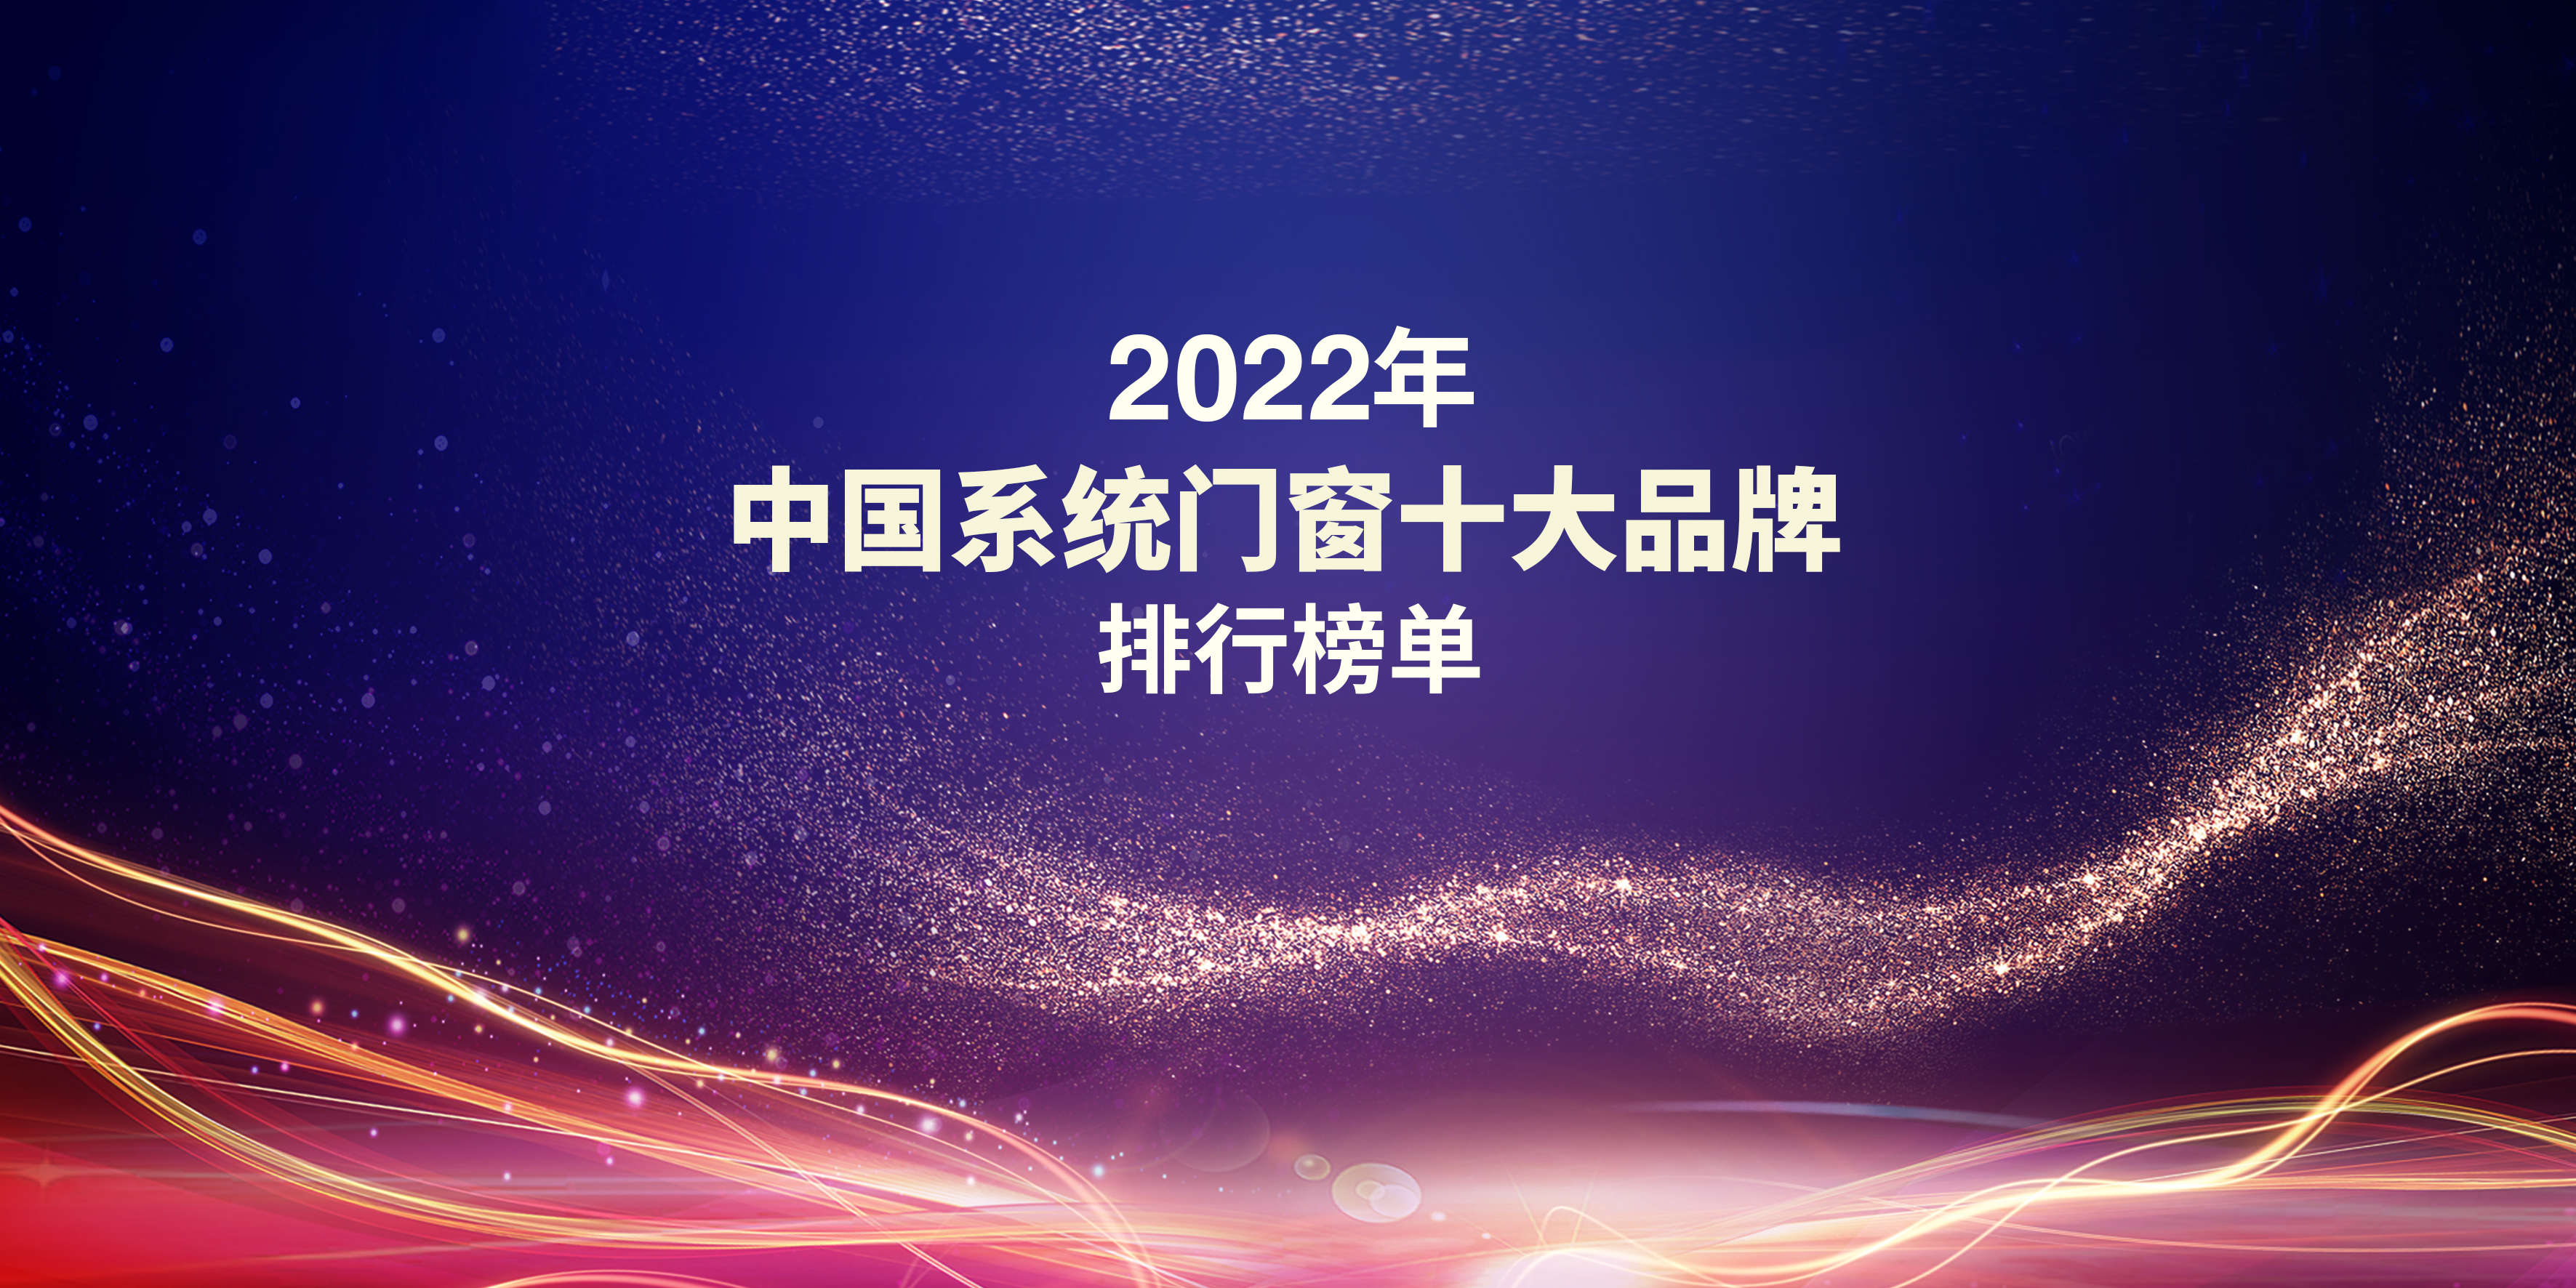 2022中國系統門窗十大品牌排行榜單